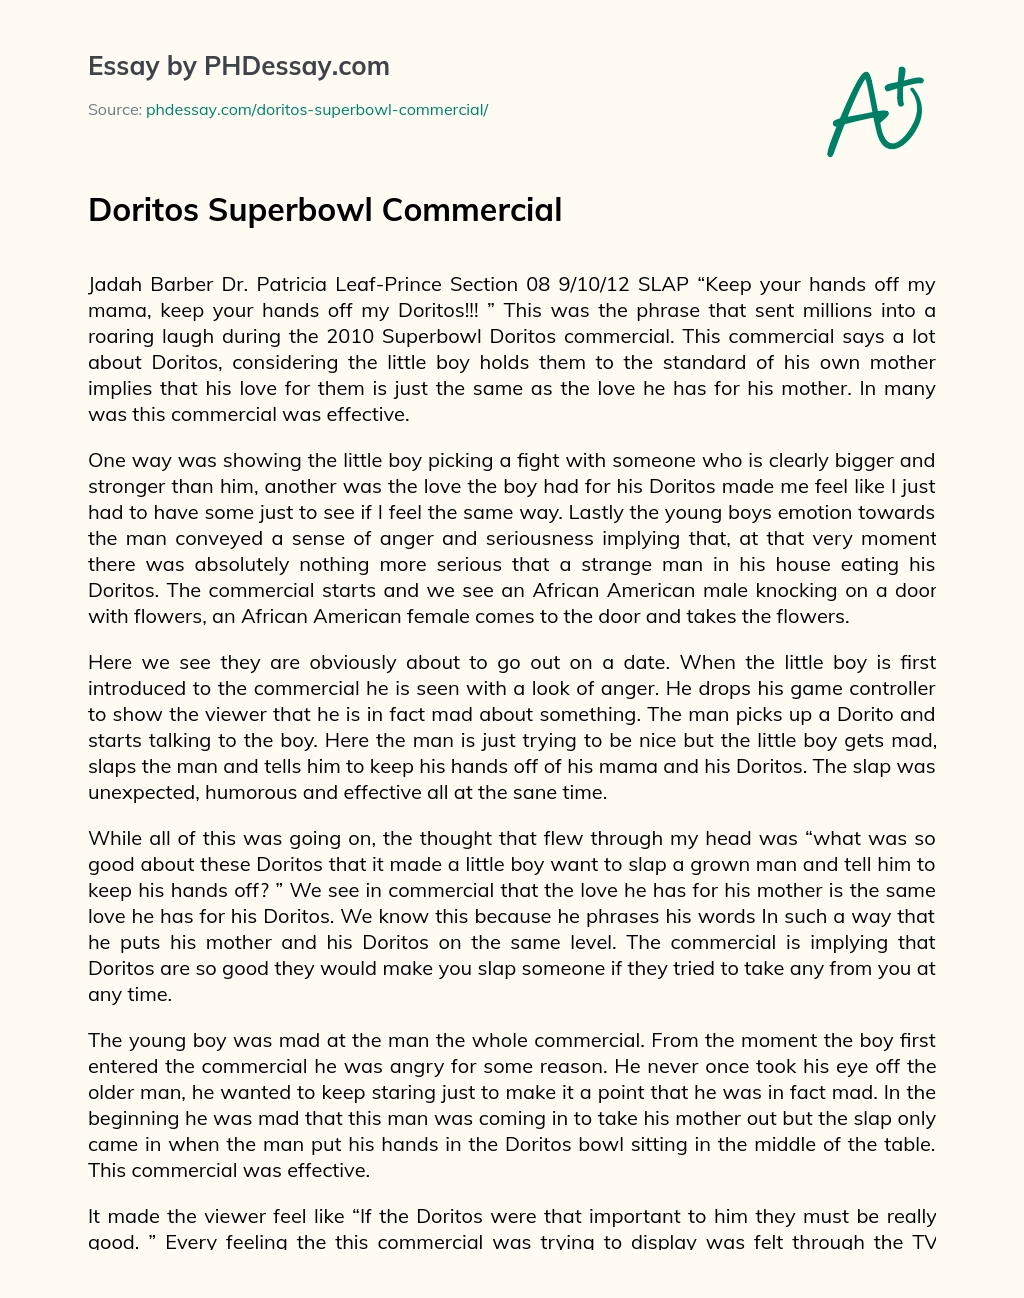 Doritos Superbowl Commercial essay